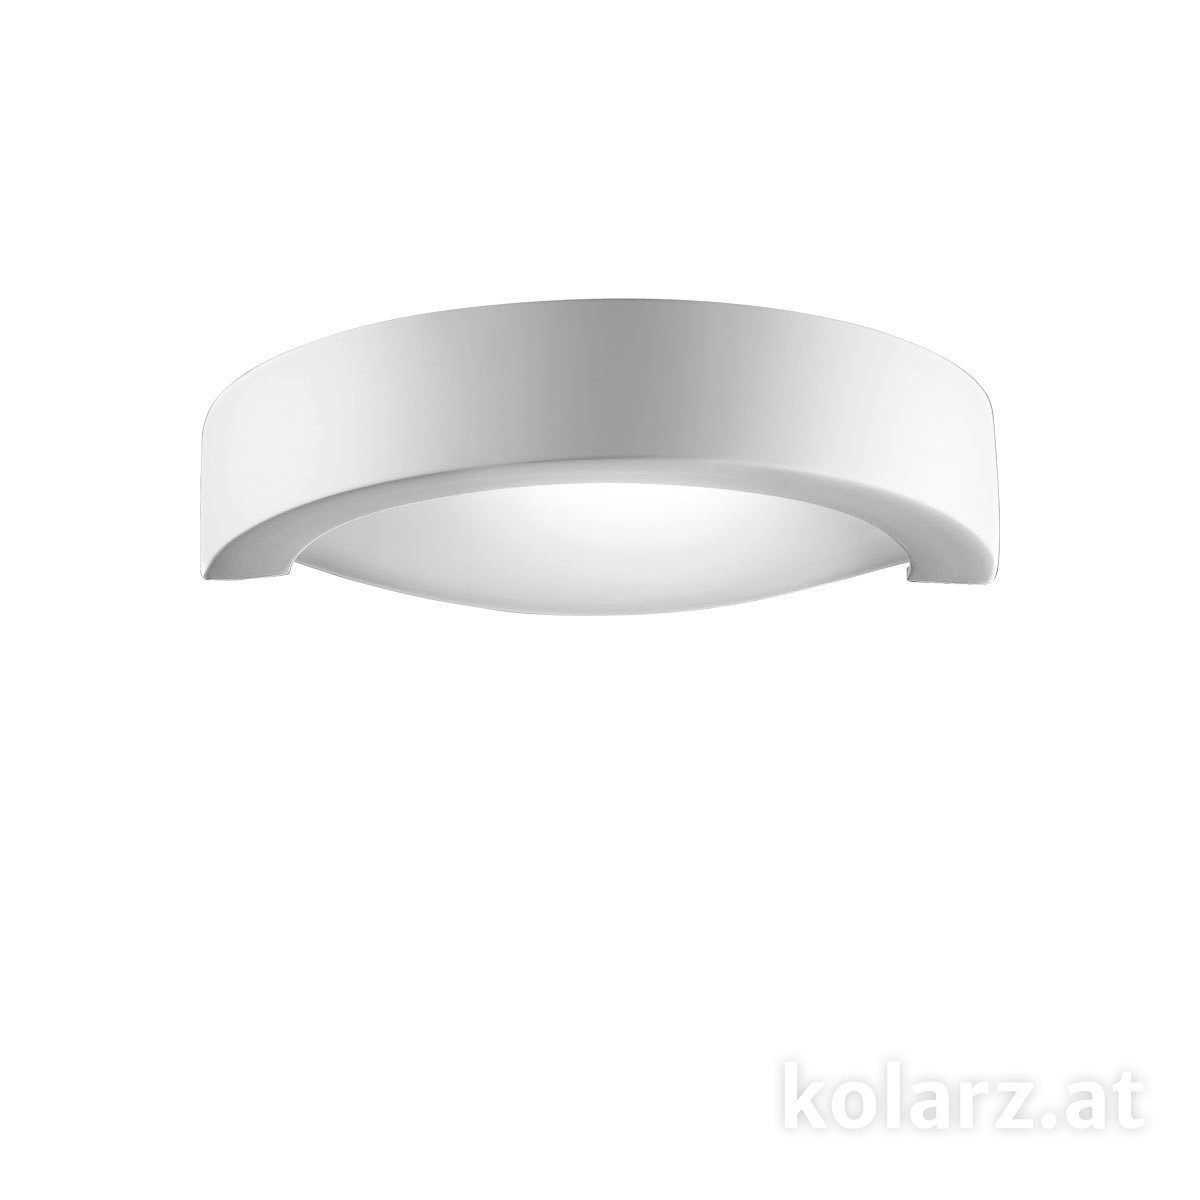 Wandleuchten & Wandlampen fürs Bad von KOLARZ Leuchten Wandleuchte CASABLANCA 219.63.1